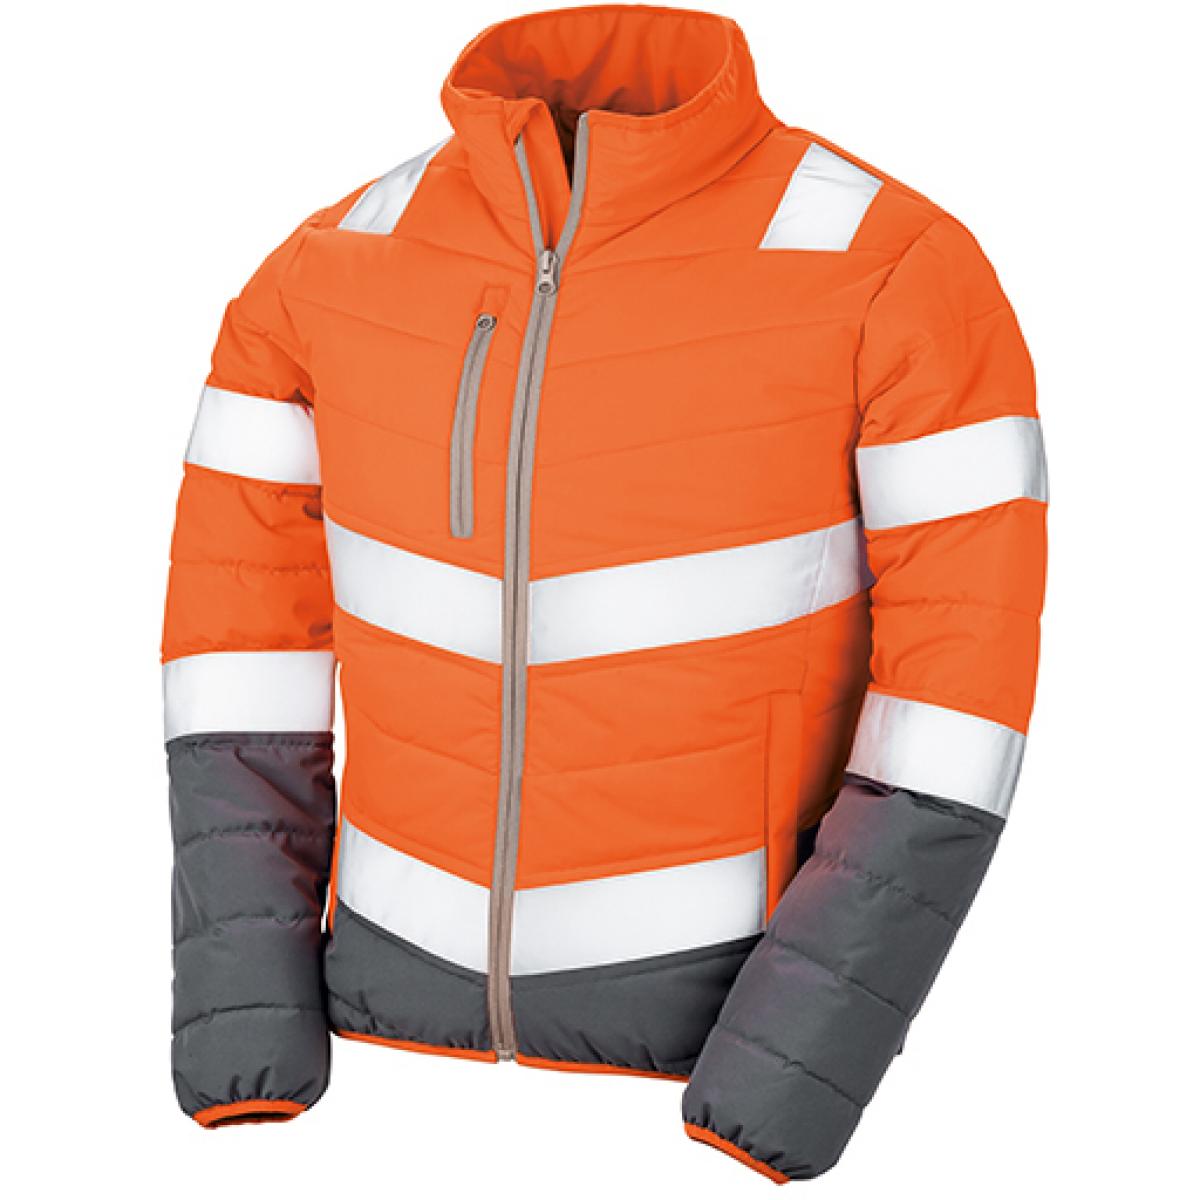 Hersteller: Result Herstellernummer: R325F Artikelbezeichnung: Damen Soft Padded Safety Jacket  ISO EN20471:2013 Klasse 2 Farbe: Fluorescent Orange/Grey